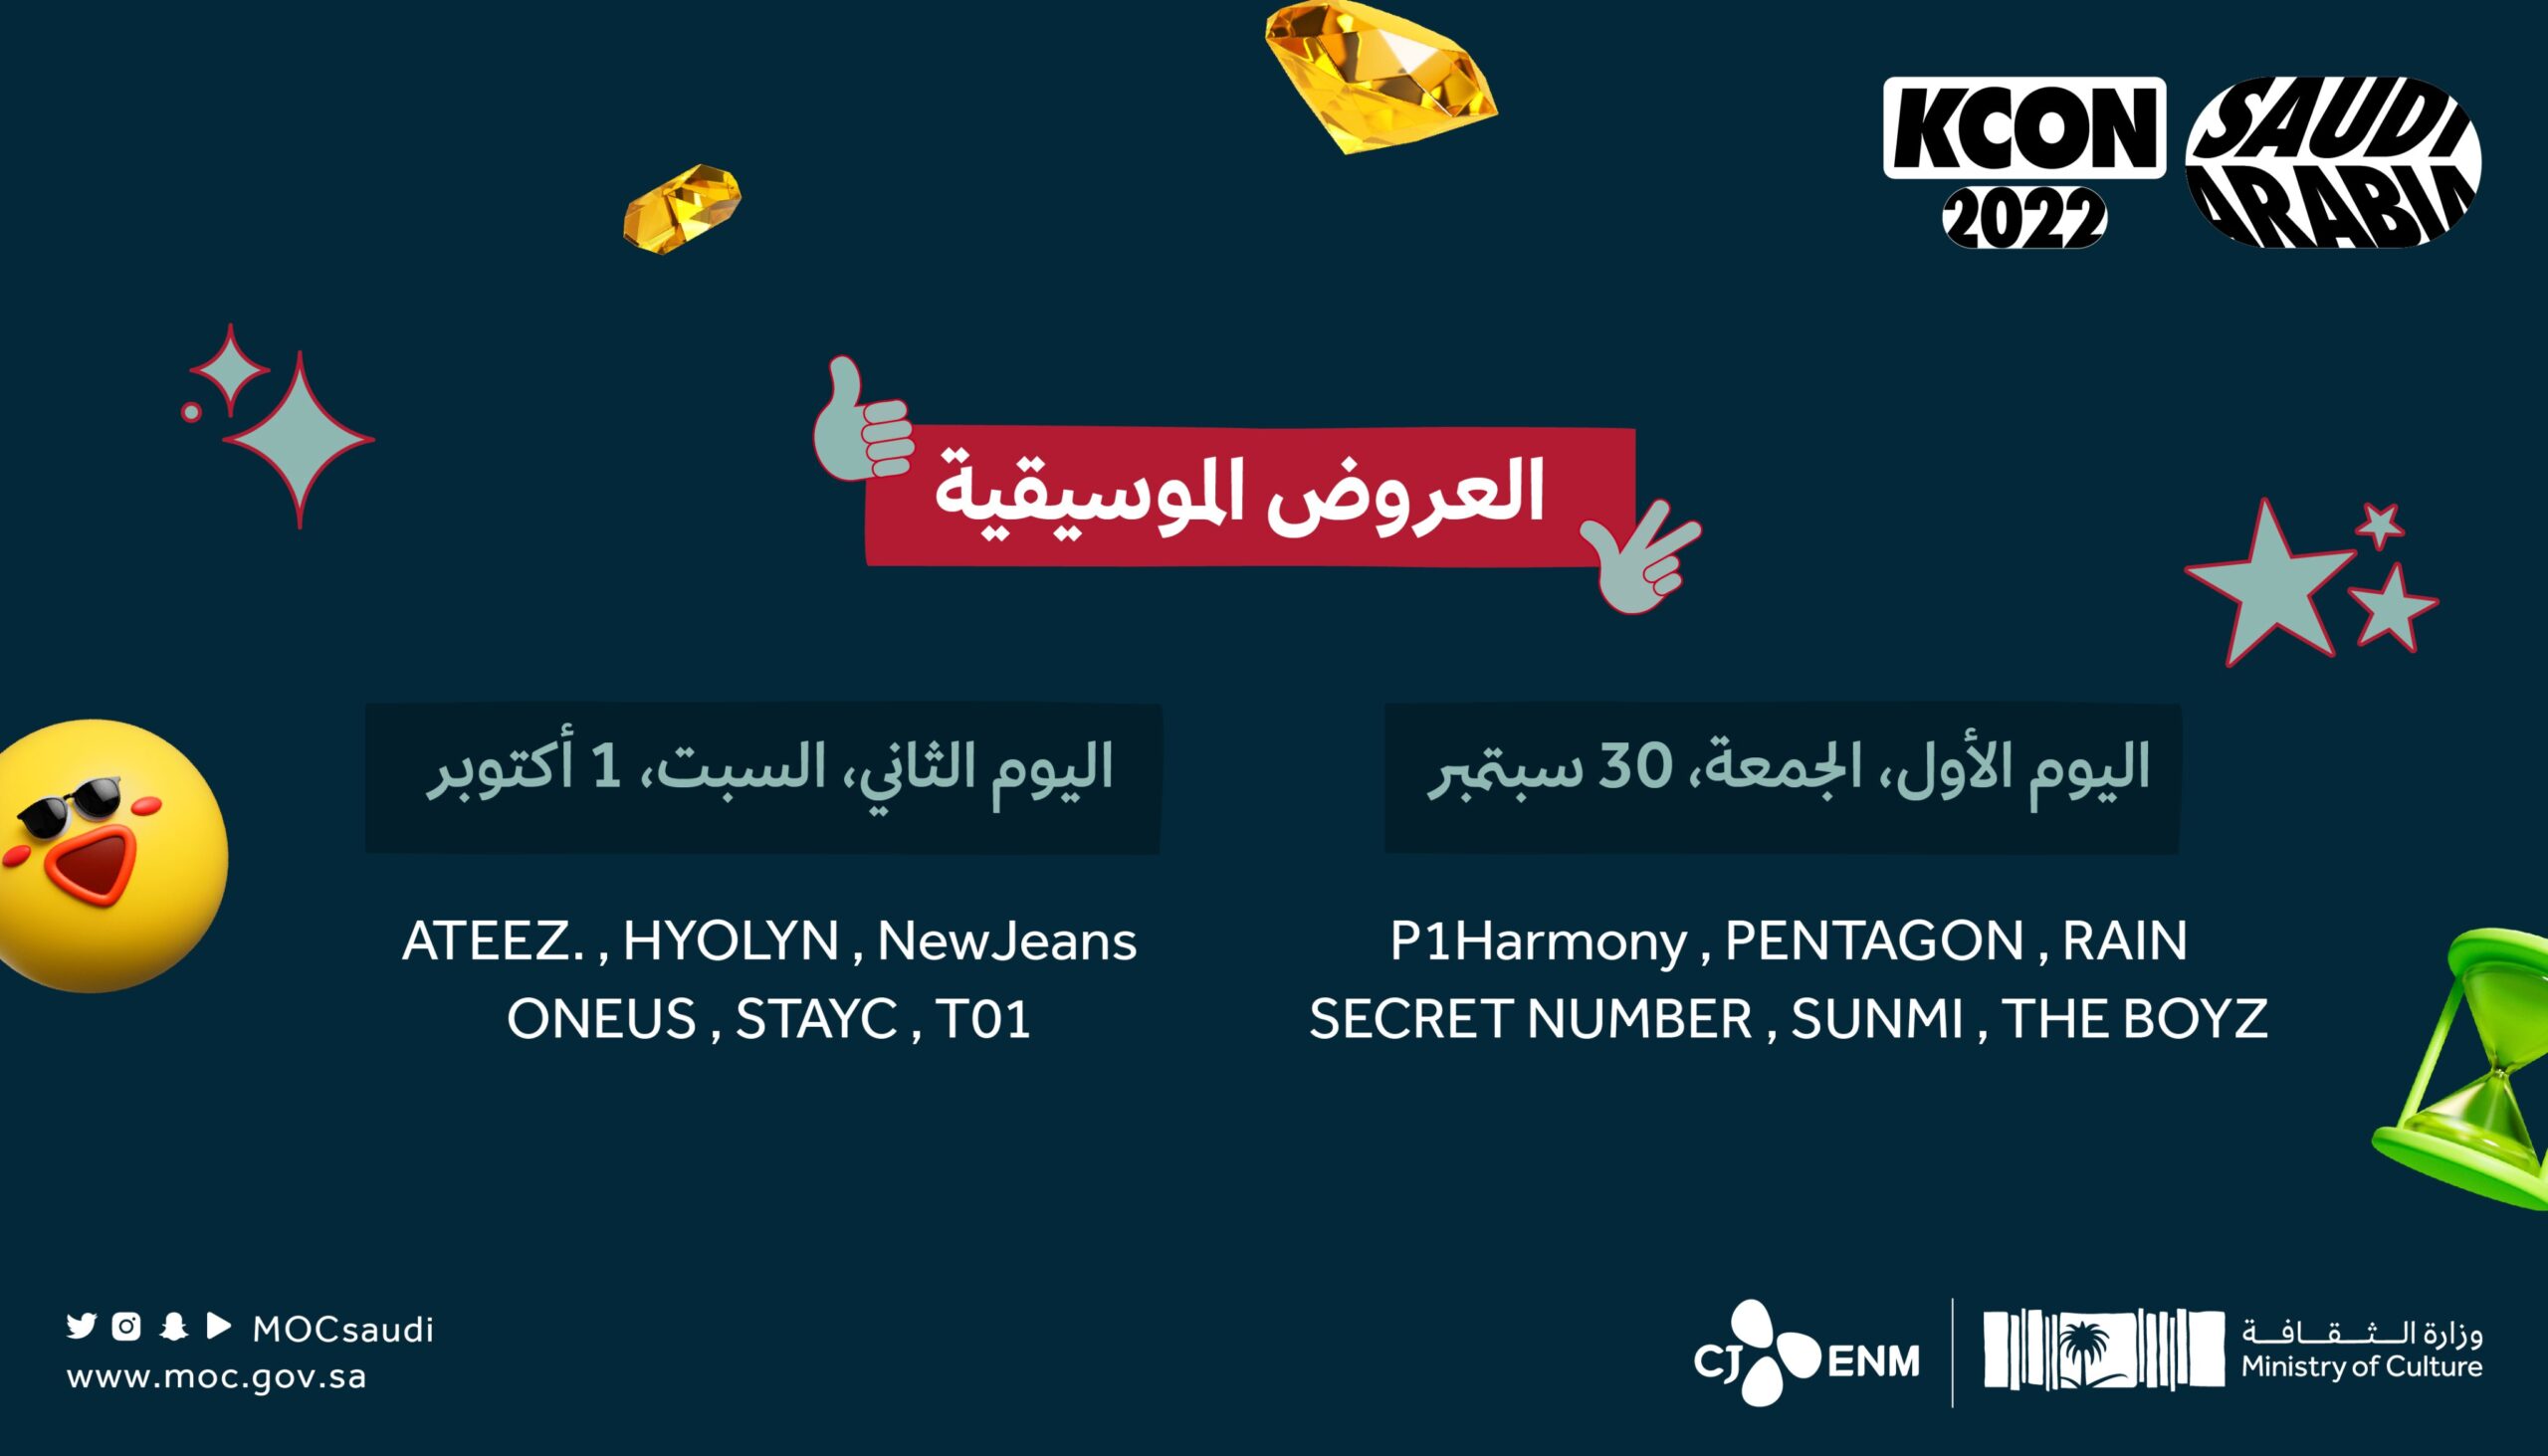 المهرجان الكوري الشهير KCON سيُعقد في الرياض يومي 30 سبتمبر و 1 أكتوبر بمشاركة تشكيلة واسعة من الفنانين